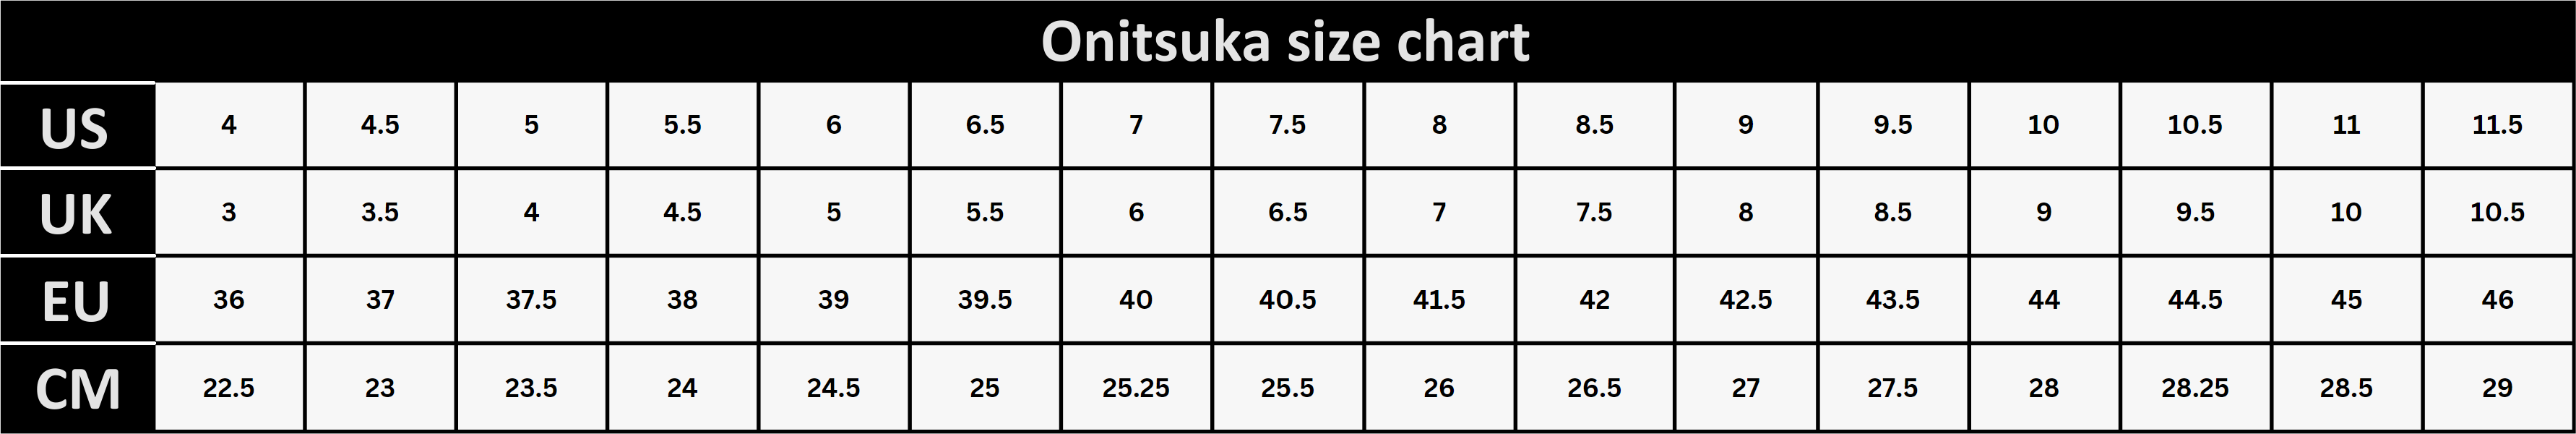 Onitsuka size chart